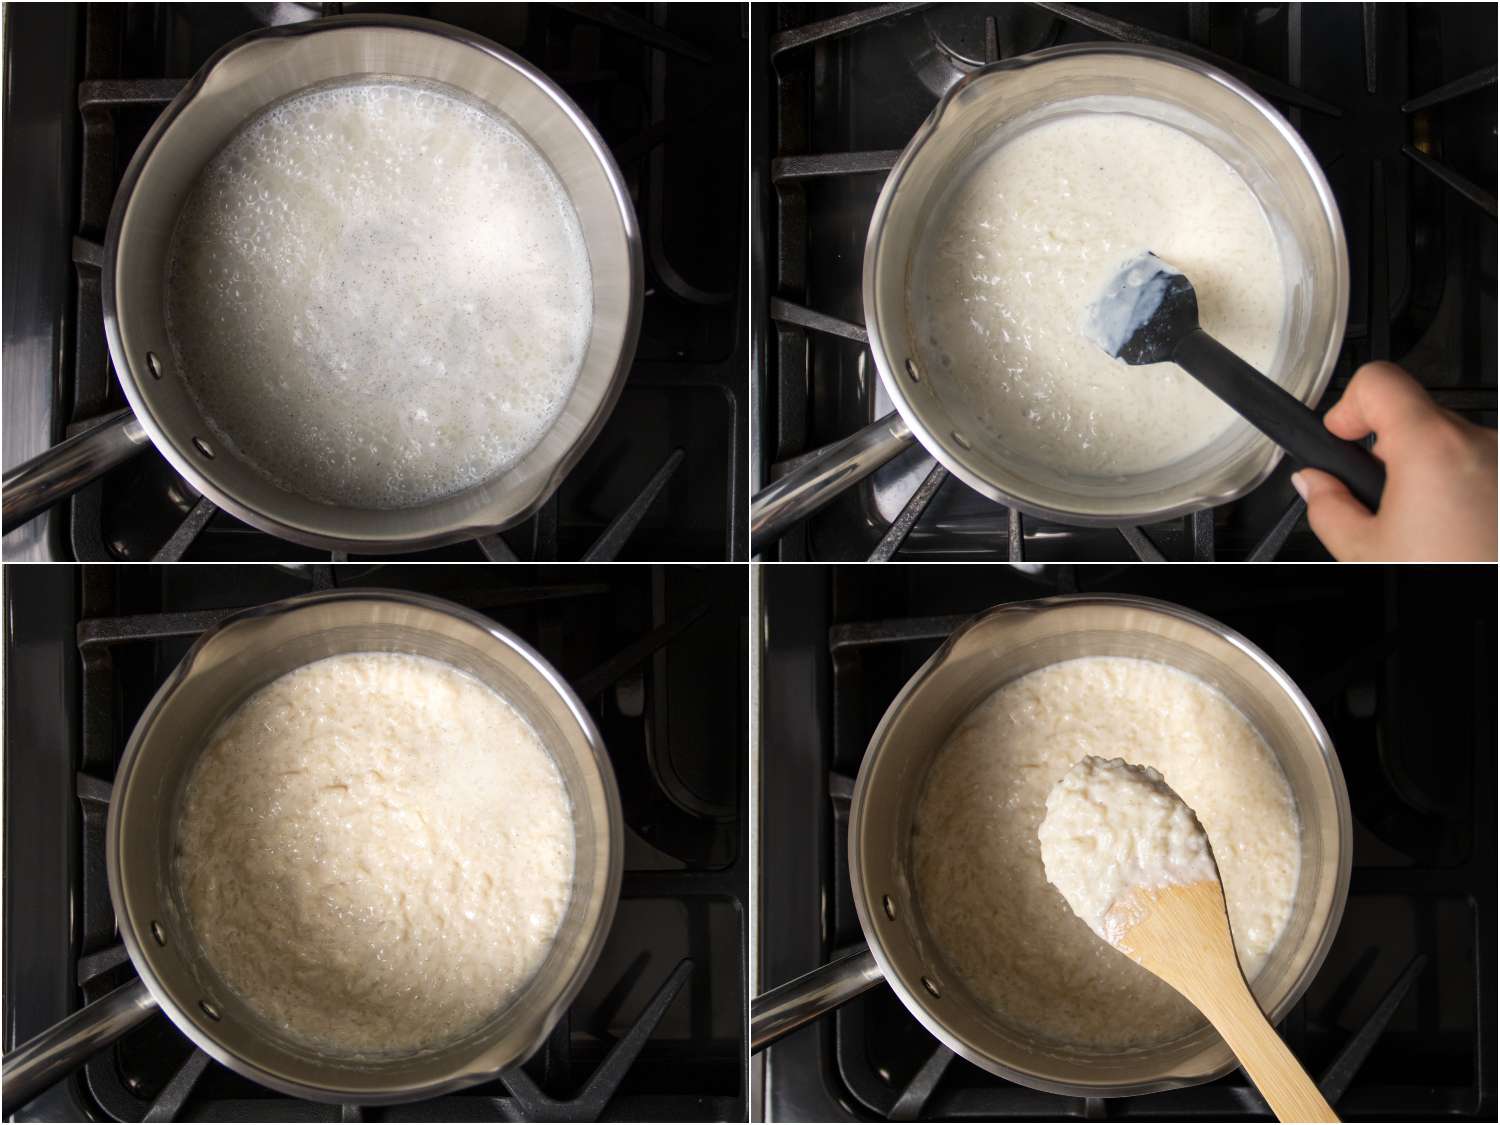 拼贴:在炉子上煮米布丁的过程。第一张图片显示煨，然后搅拌，内容物变稠，最后用木勺显示大米布丁的厚度gydF4y2Ba